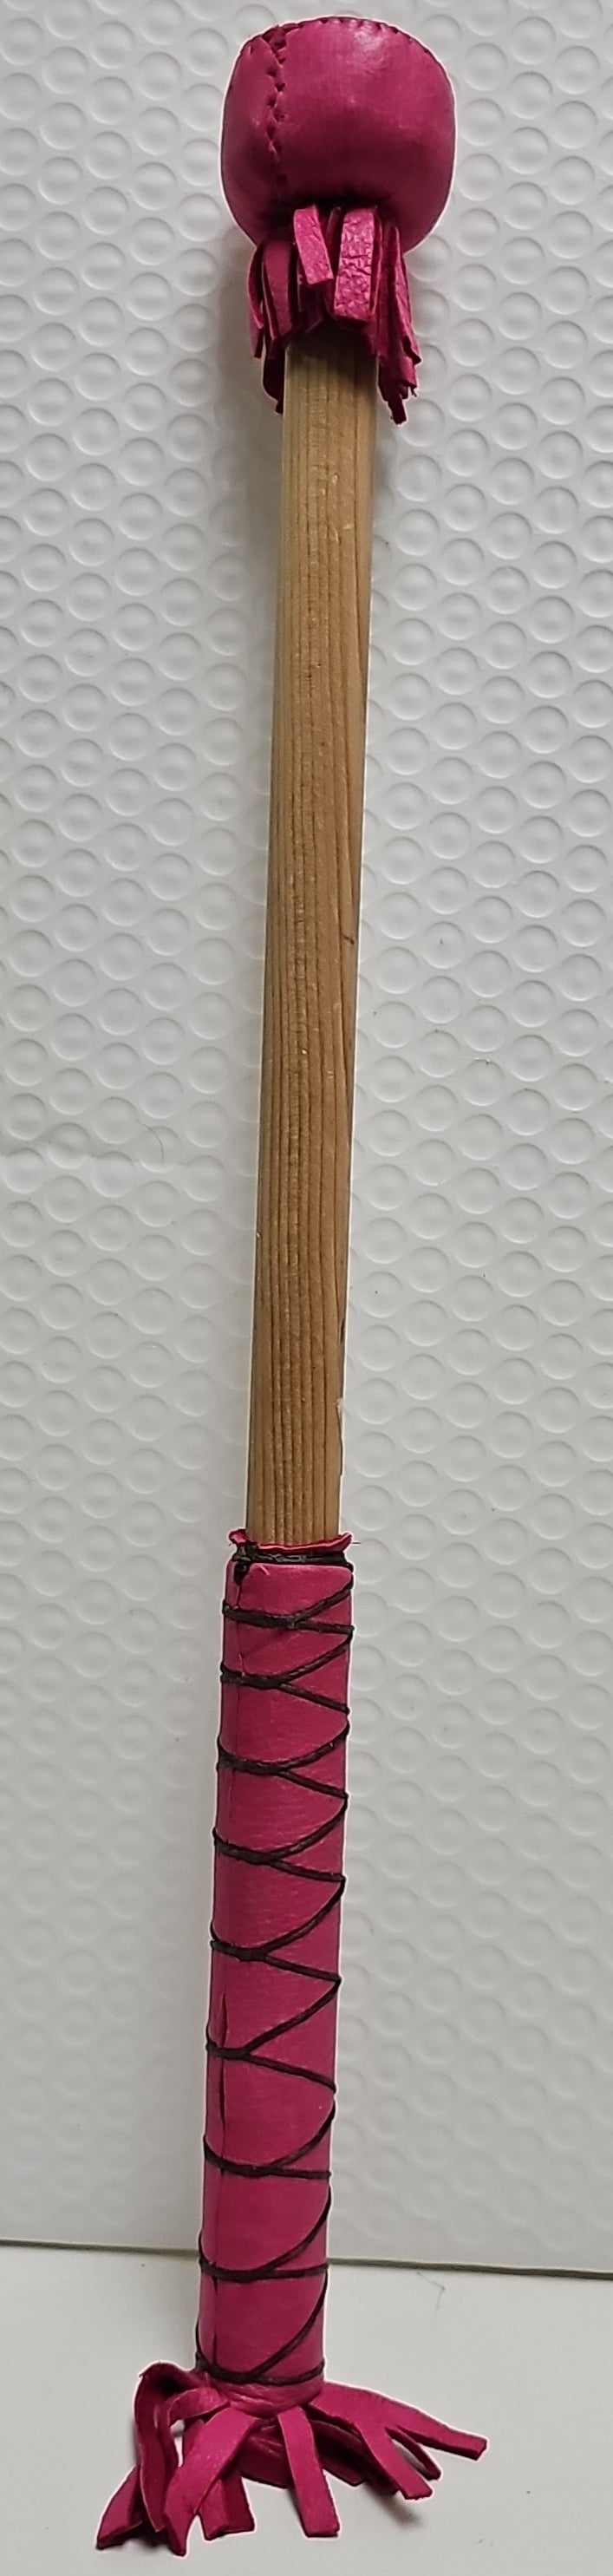 Pink Drum Stick